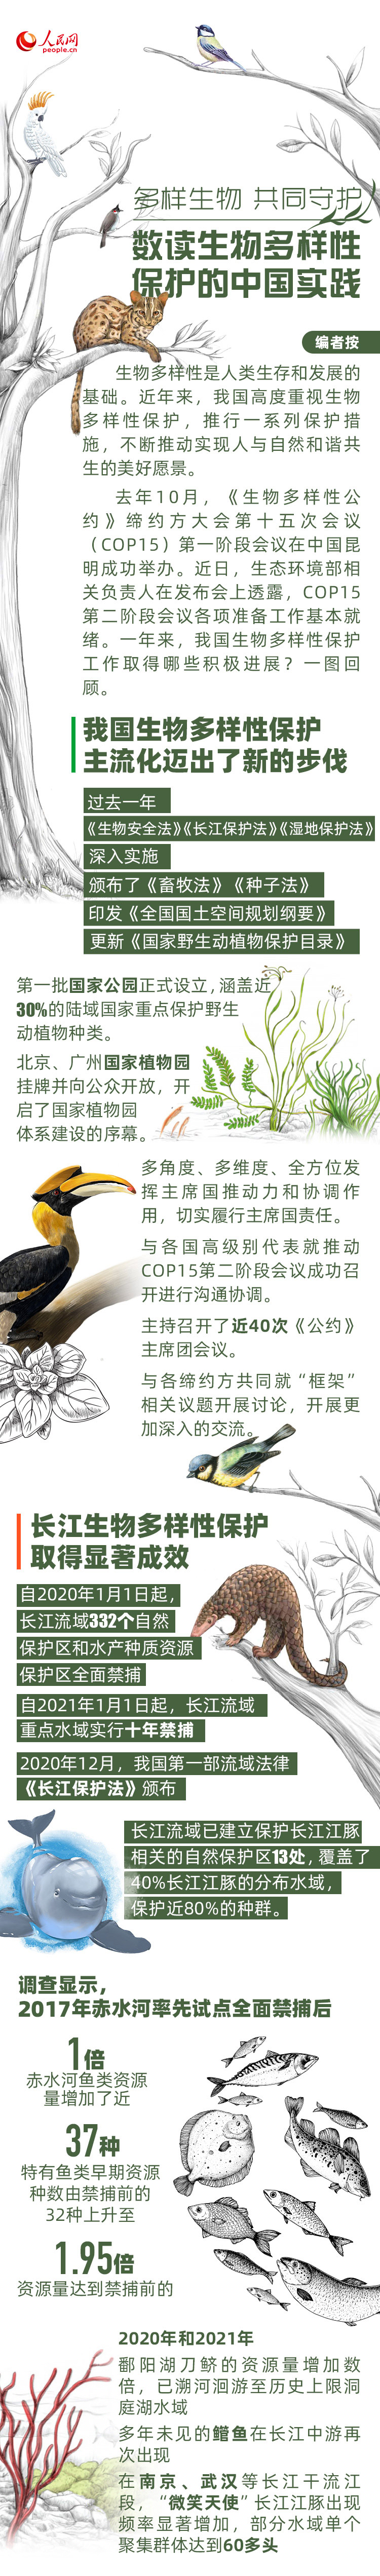 多样生物 共同守护 数读生物多样性保护的中国实践